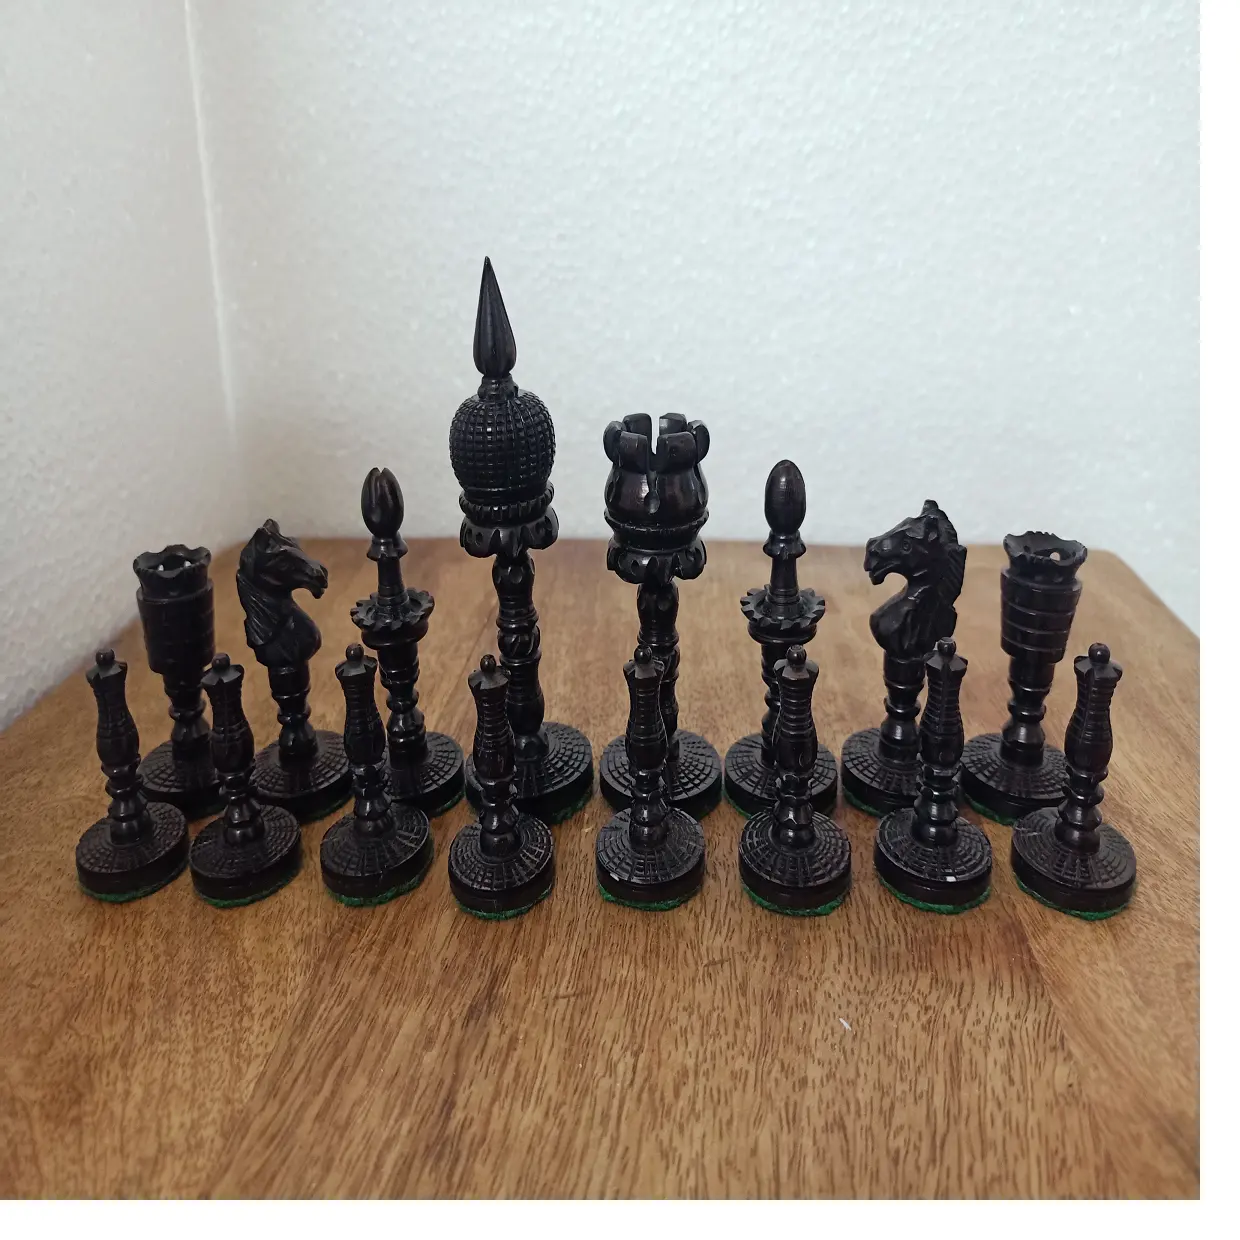 Шахматы черного цвета ручной работы, подходят для использования с любой шахматной доской и любой шахматной игрой, идеально подходят для перепродажи